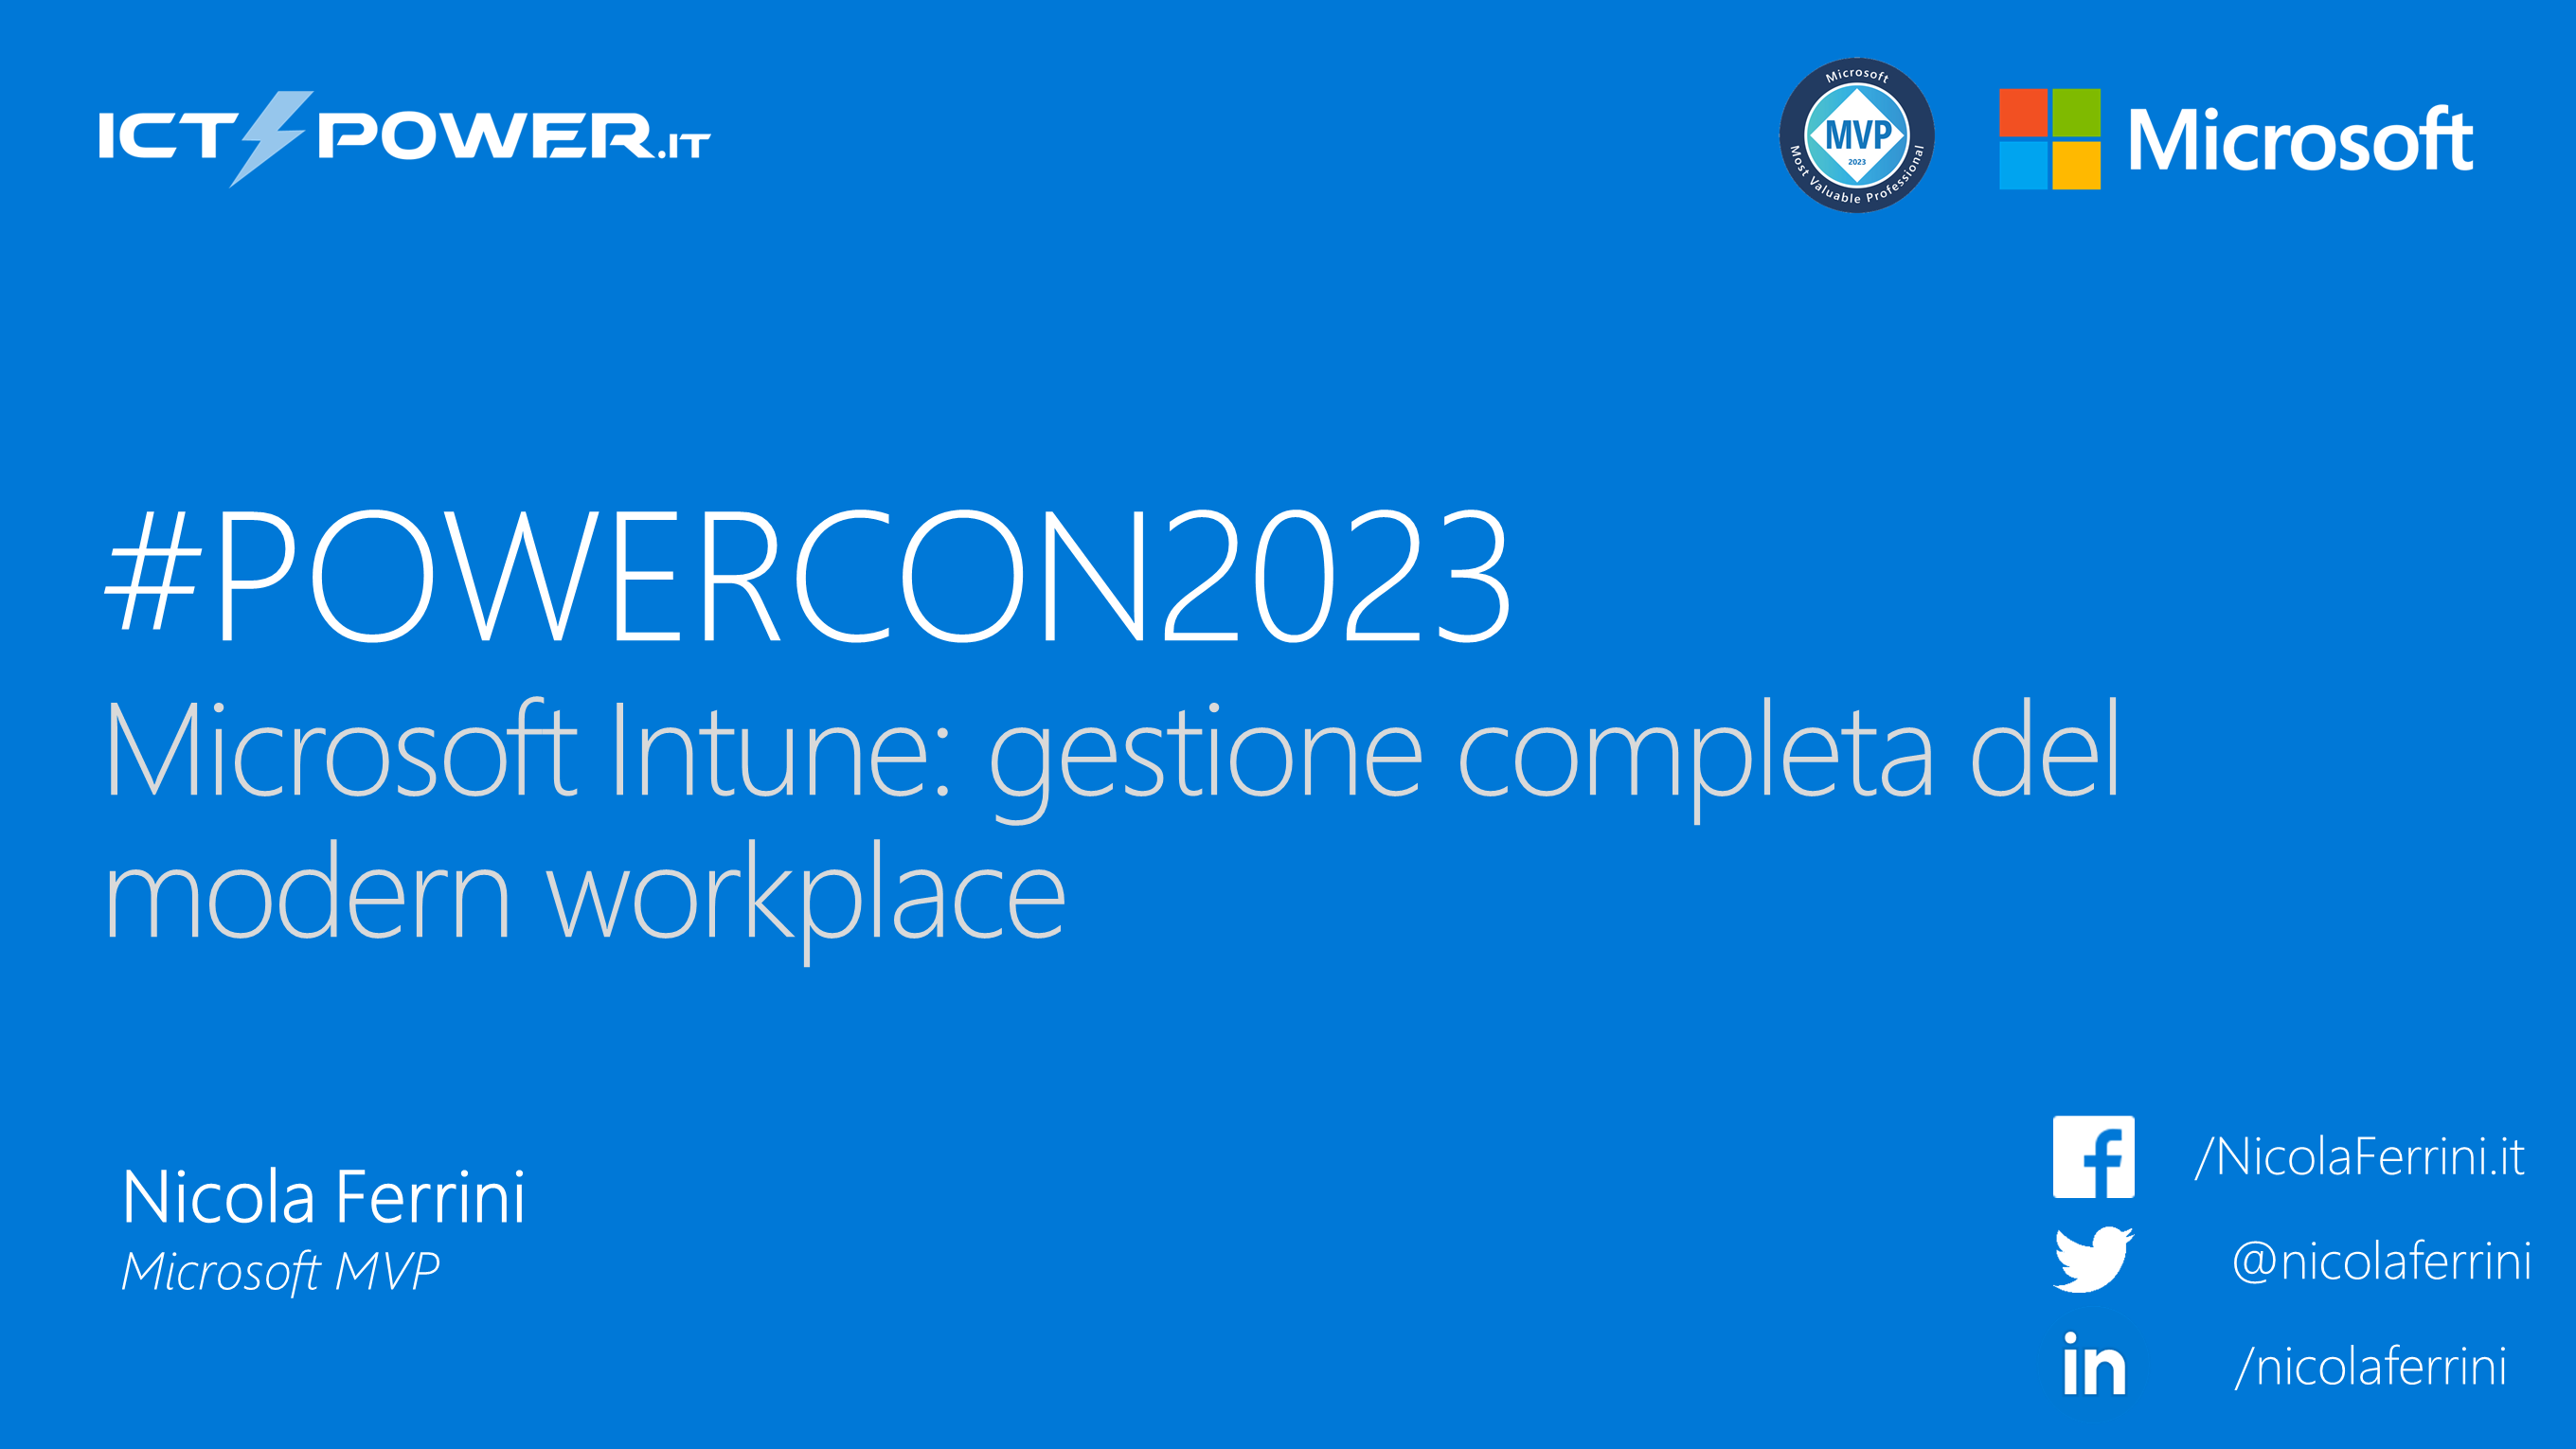 Nicola Ferrini – Microsoft Intune: gestione completa del modern workplace